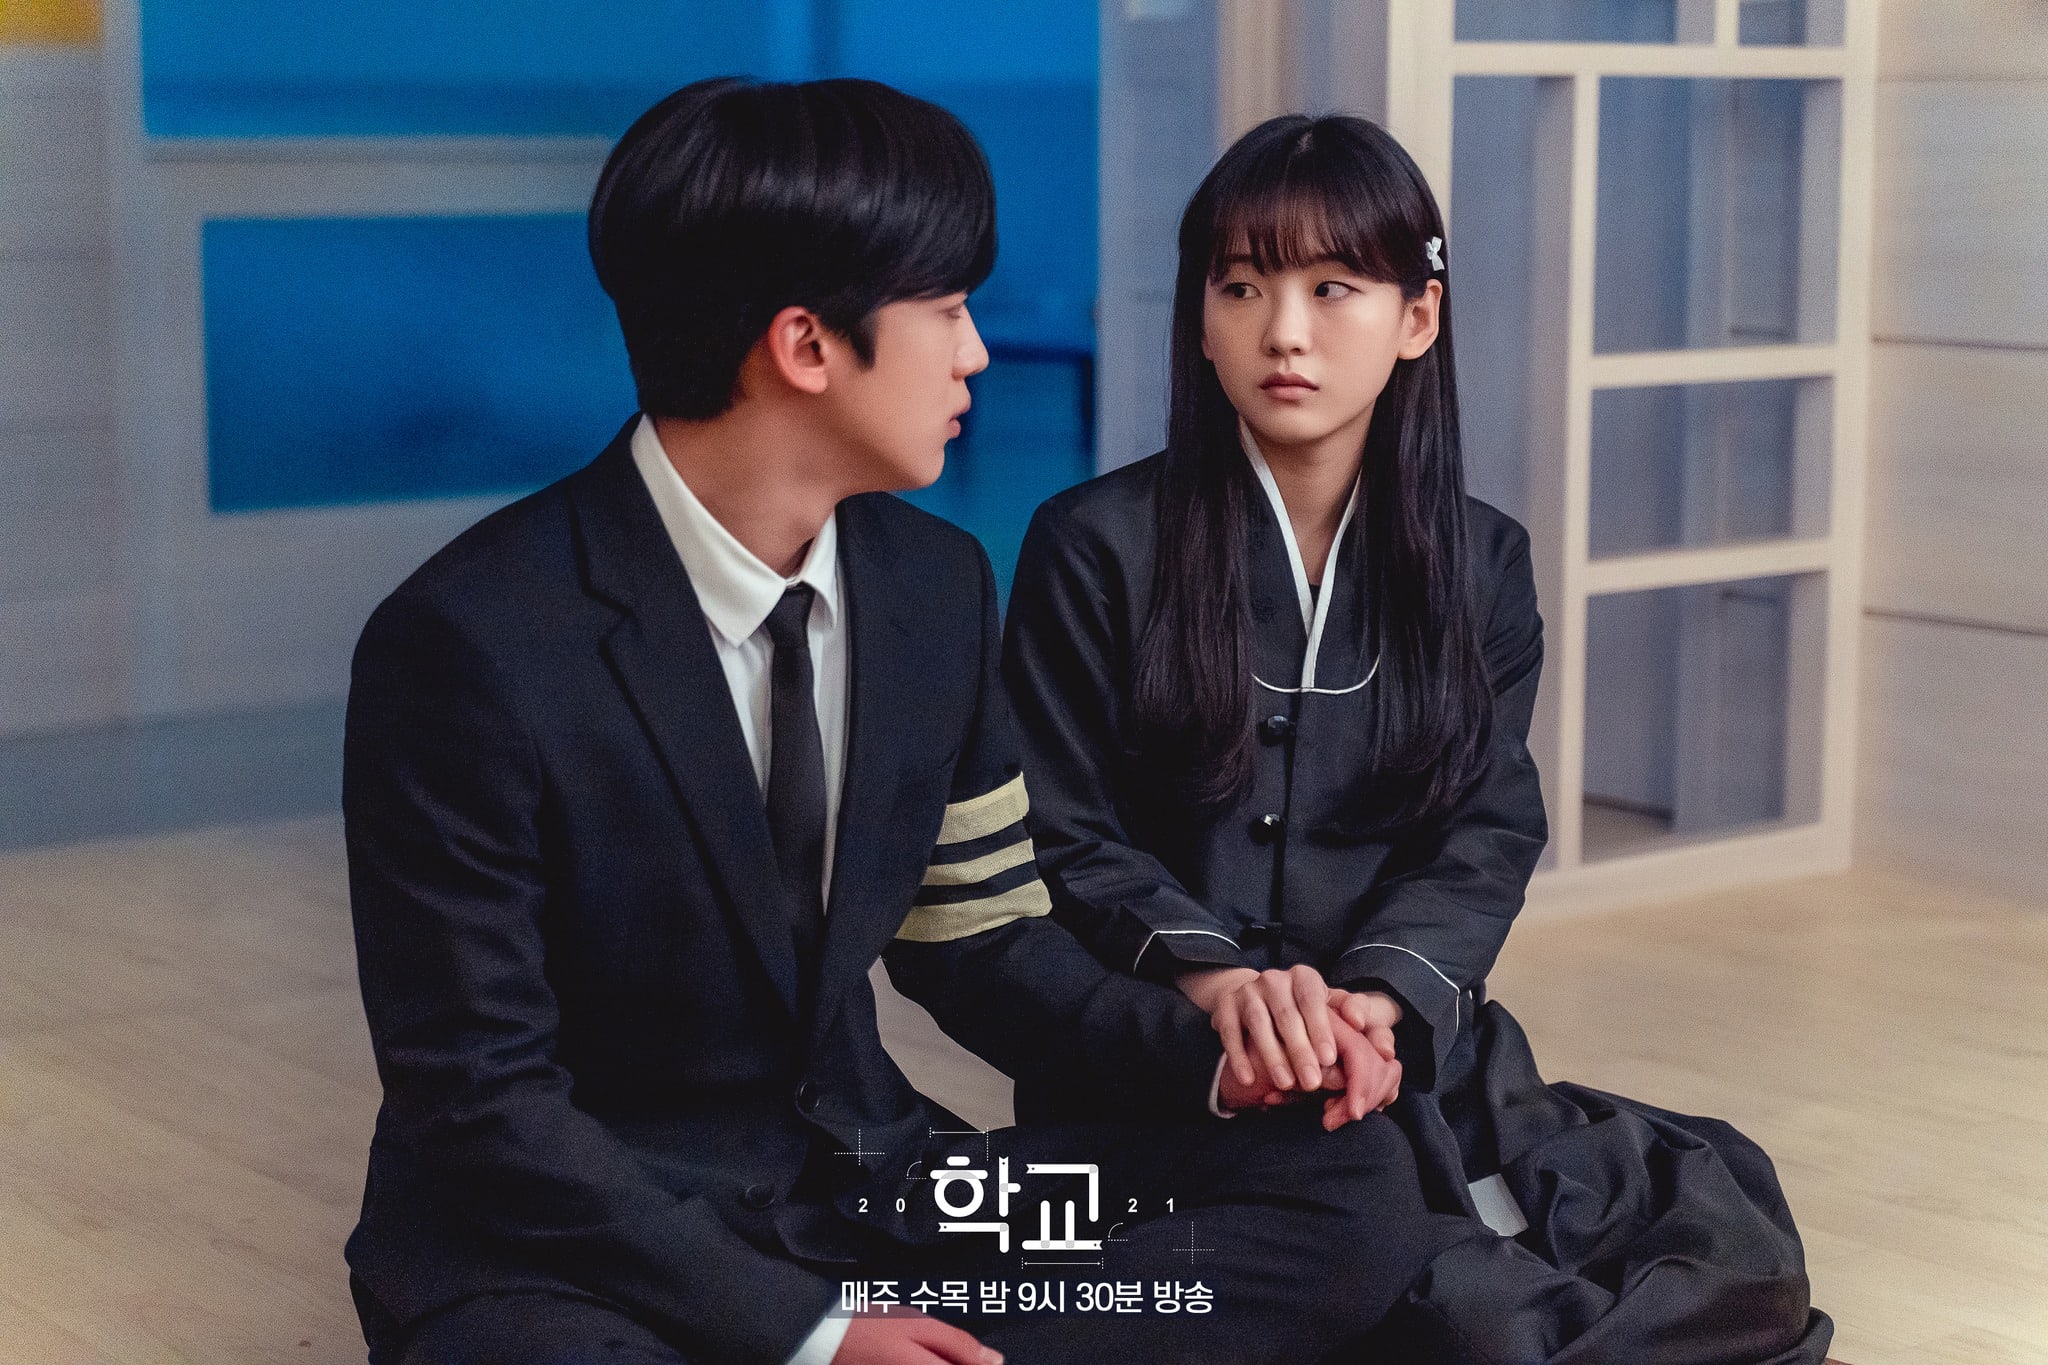 Kim Yo Han de WEi es consolado por Cho Yi Hyun y Chu Young Woo después de una pérdida inesperada en “School 2021”